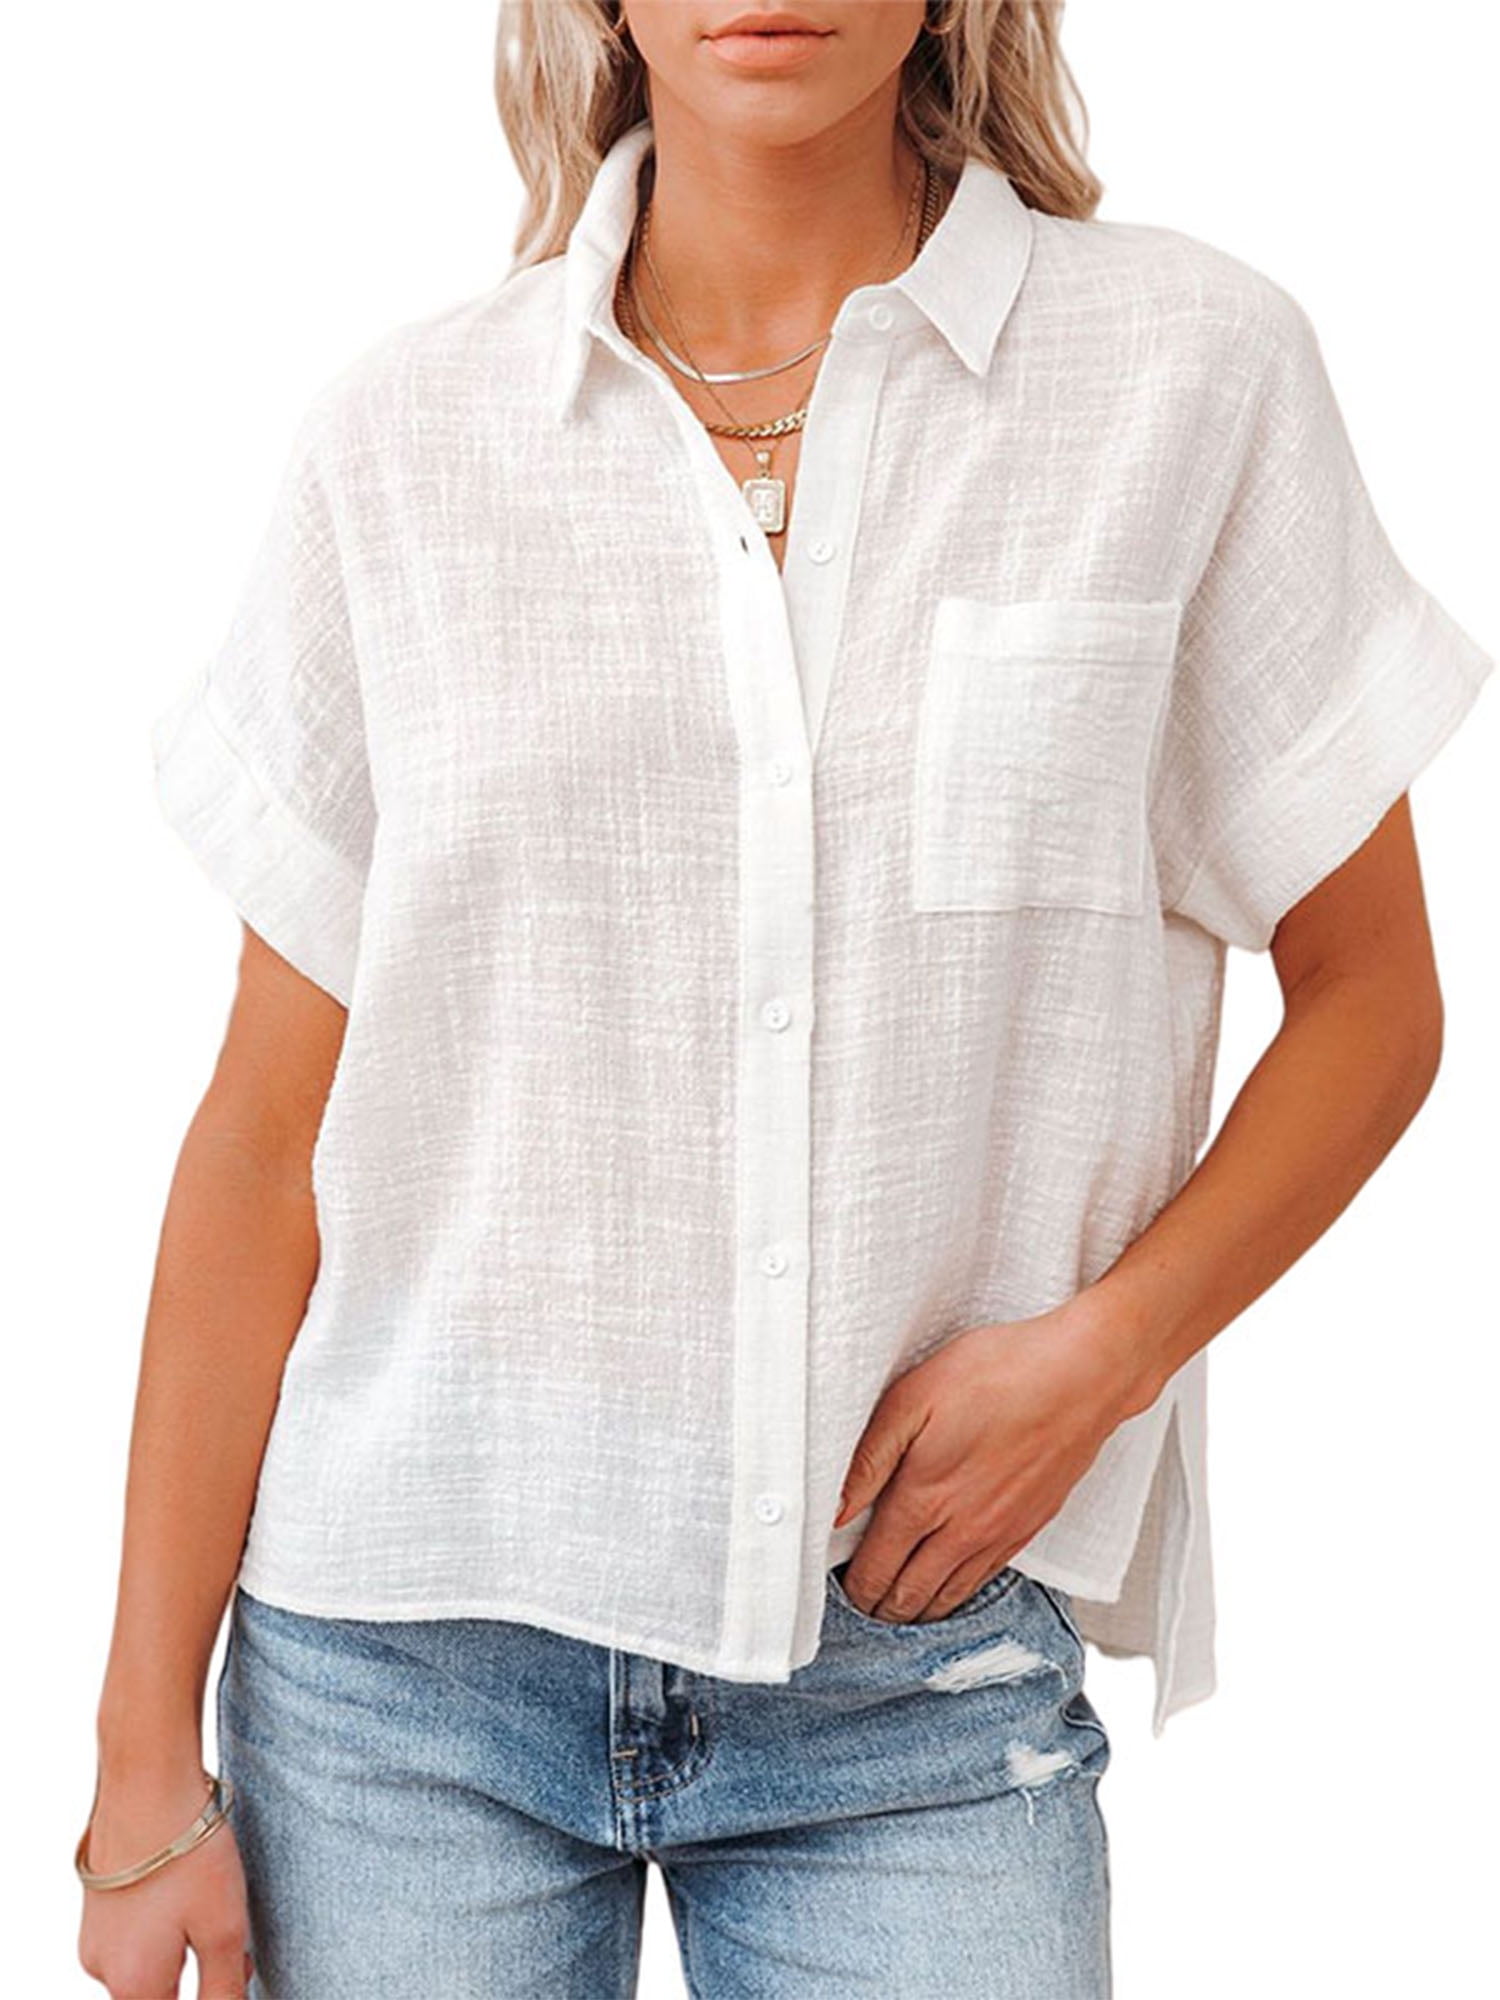 Women's Short Sleeve V Neck Shirts Casual Summer Button Down T Shirt